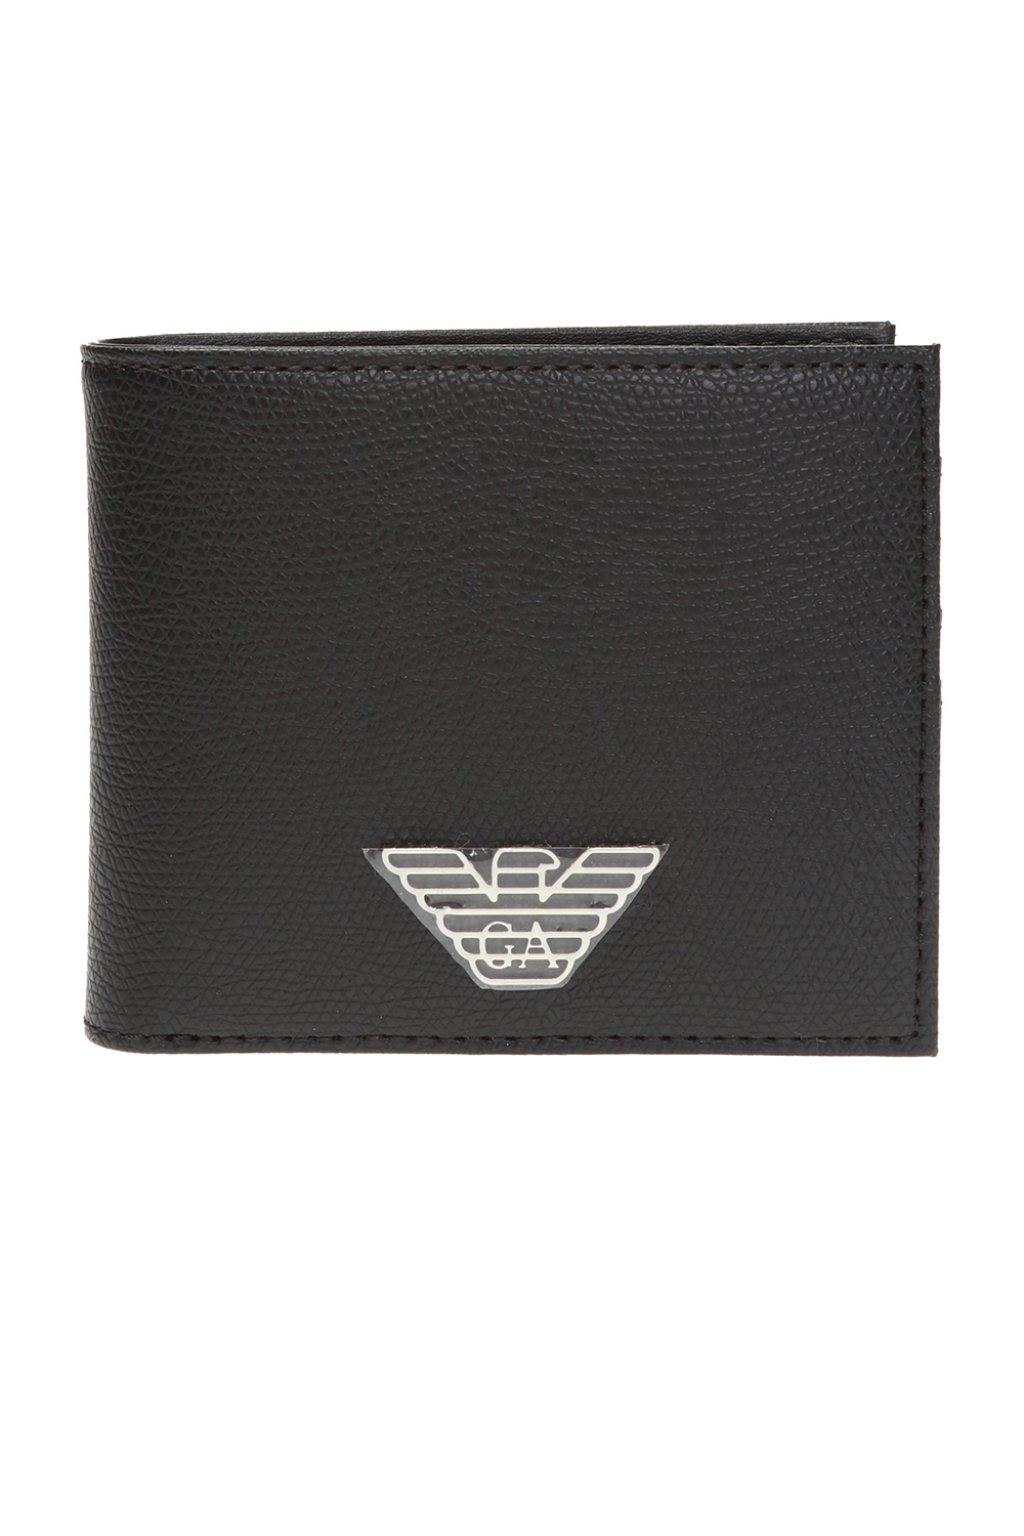 Men's Accessories | Emporio Armani Wallet & card case | giorgio armani slim  fit shirt | IetpShops